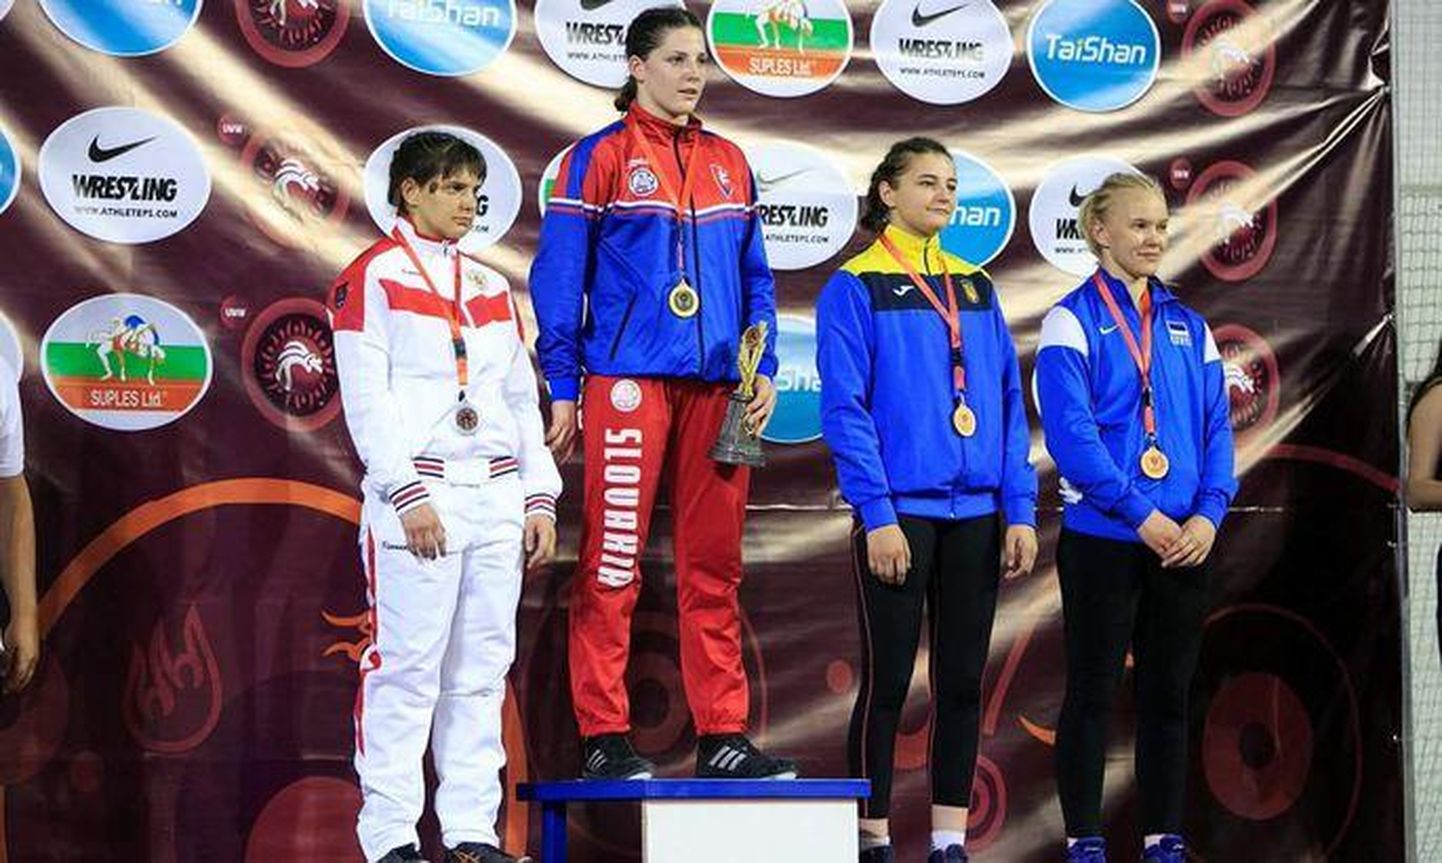 Marta Pajula (paremalt esimene) Euroopa meistrivõistlustel medalivõitjate autasustamisel.